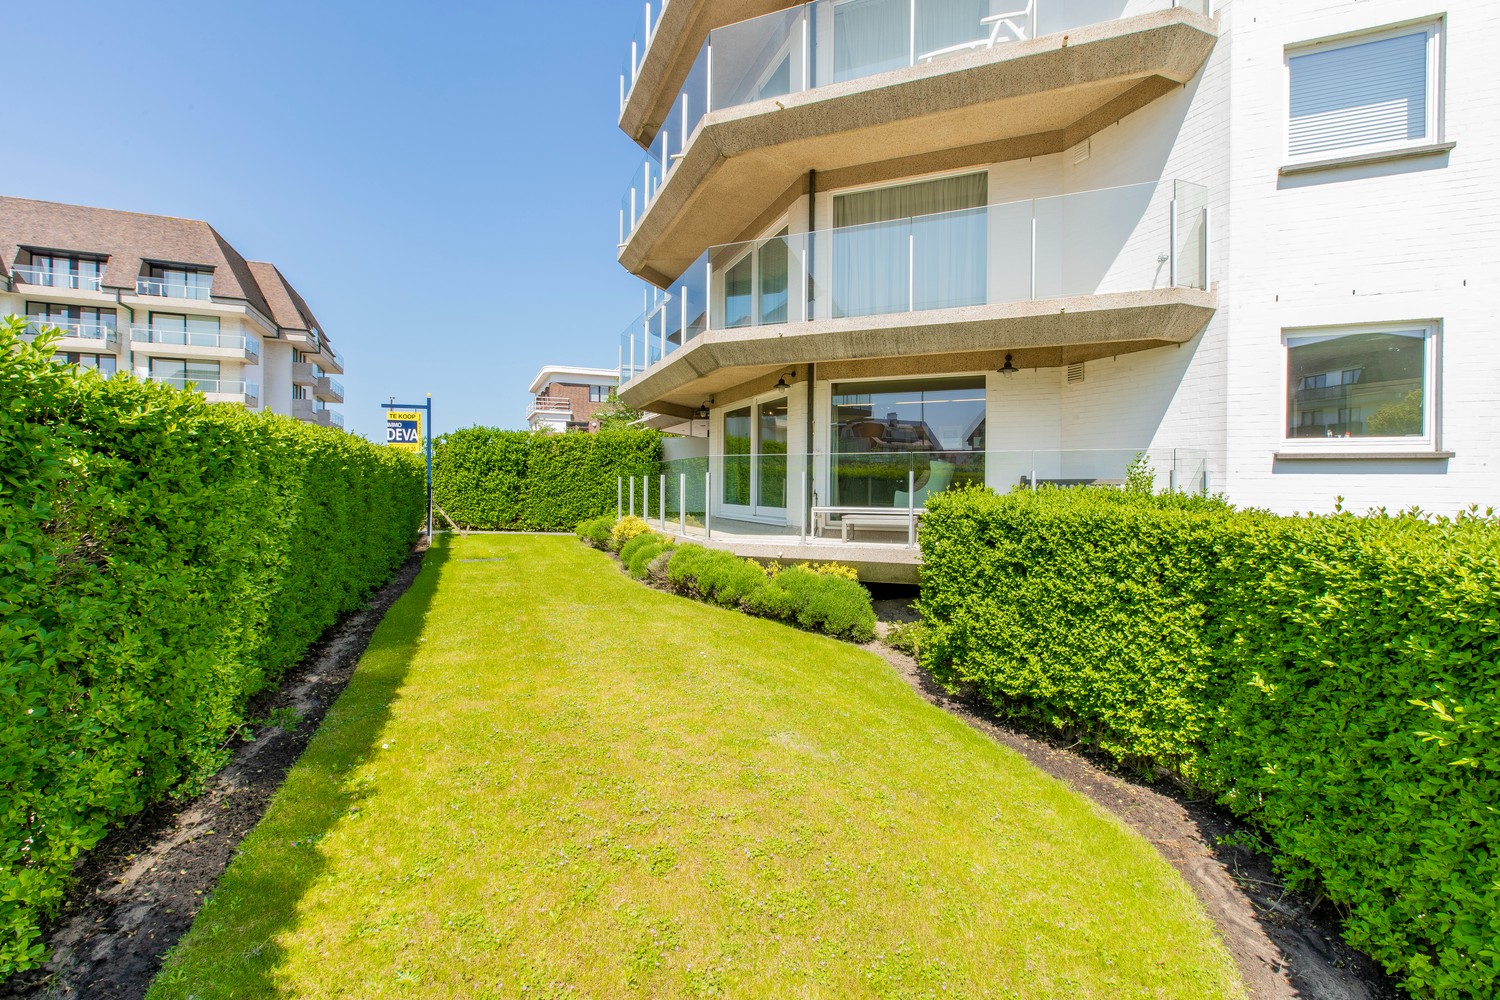 Lichtrijk hoek-appartement van ruim 180m2, rustig gelegen in een standingvolle villaresidentie, op enkele stappen van de zeedijk Albertstrand en de Royal Zoute Tennis Club, ter hoogte van de Wandeldij 